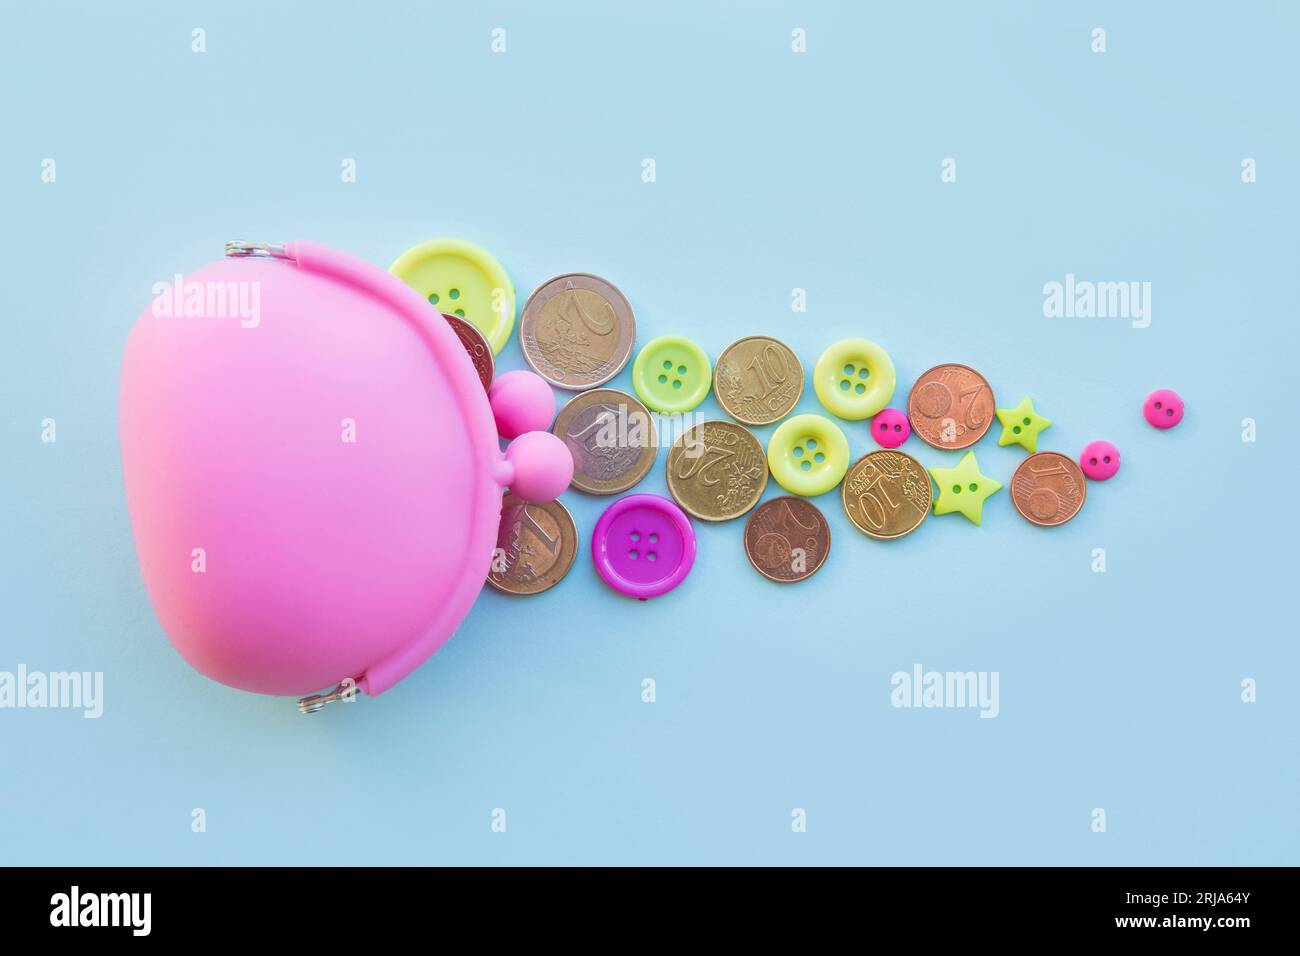 Concetto di soldi per bambini. Monete e bottoni in euro sparsi intorno al portafoglio di colore rosa su sfondo blu. Copia spazio. Foto Stock